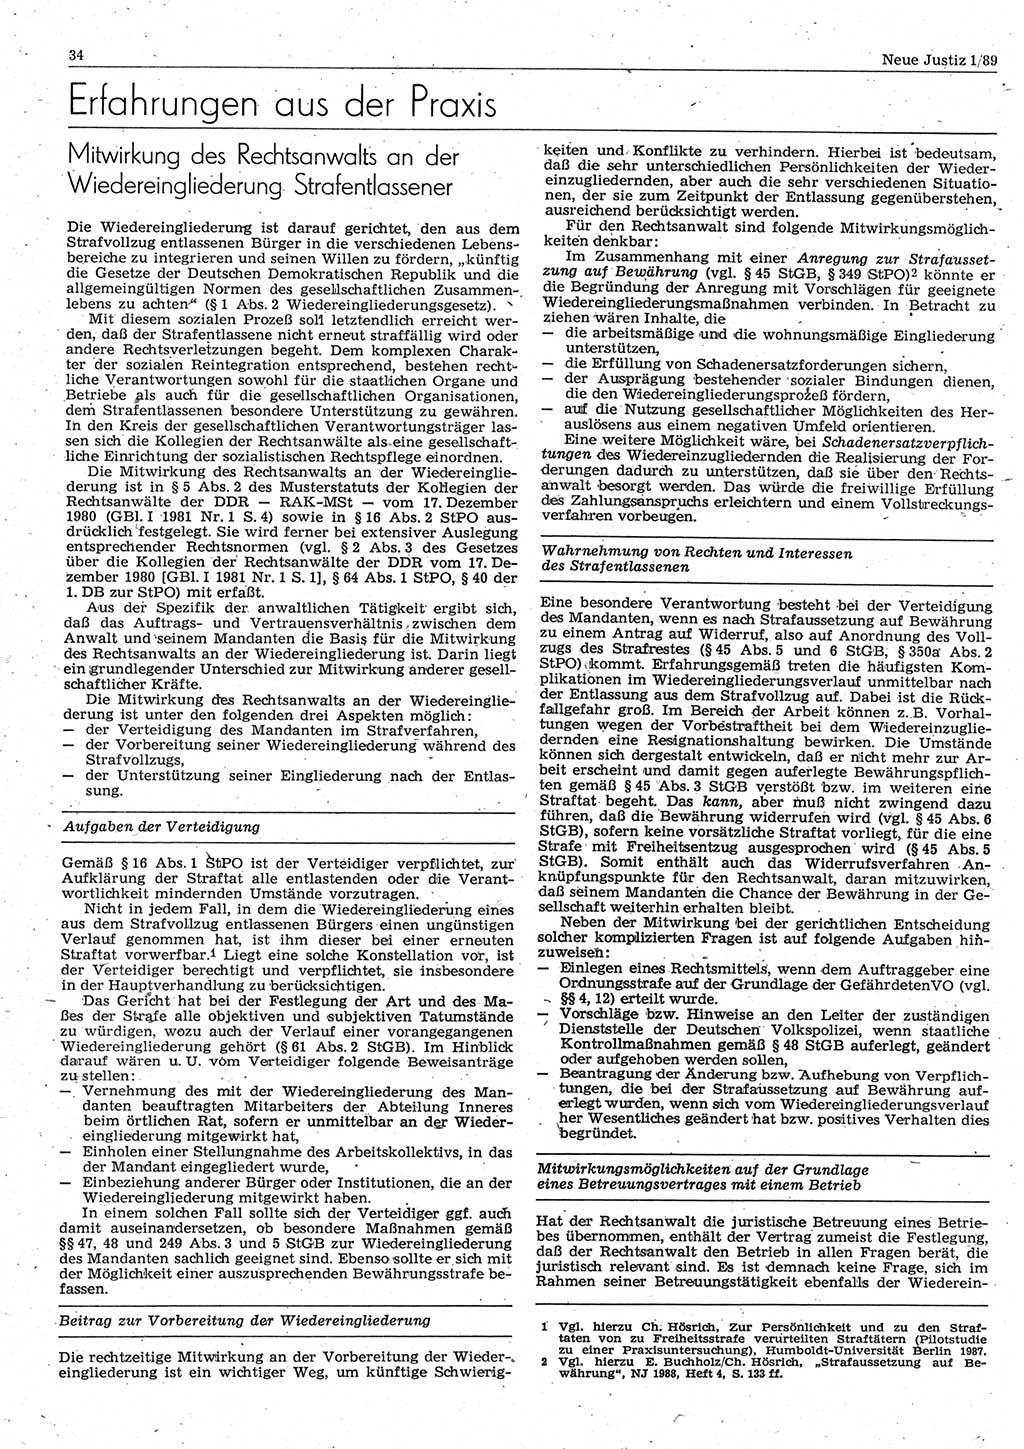 Neue Justiz (NJ), Zeitschrift für sozialistisches Recht und Gesetzlichkeit [Deutsche Demokratische Republik (DDR)], 43. Jahrgang 1989, Seite 34 (NJ DDR 1989, S. 34)